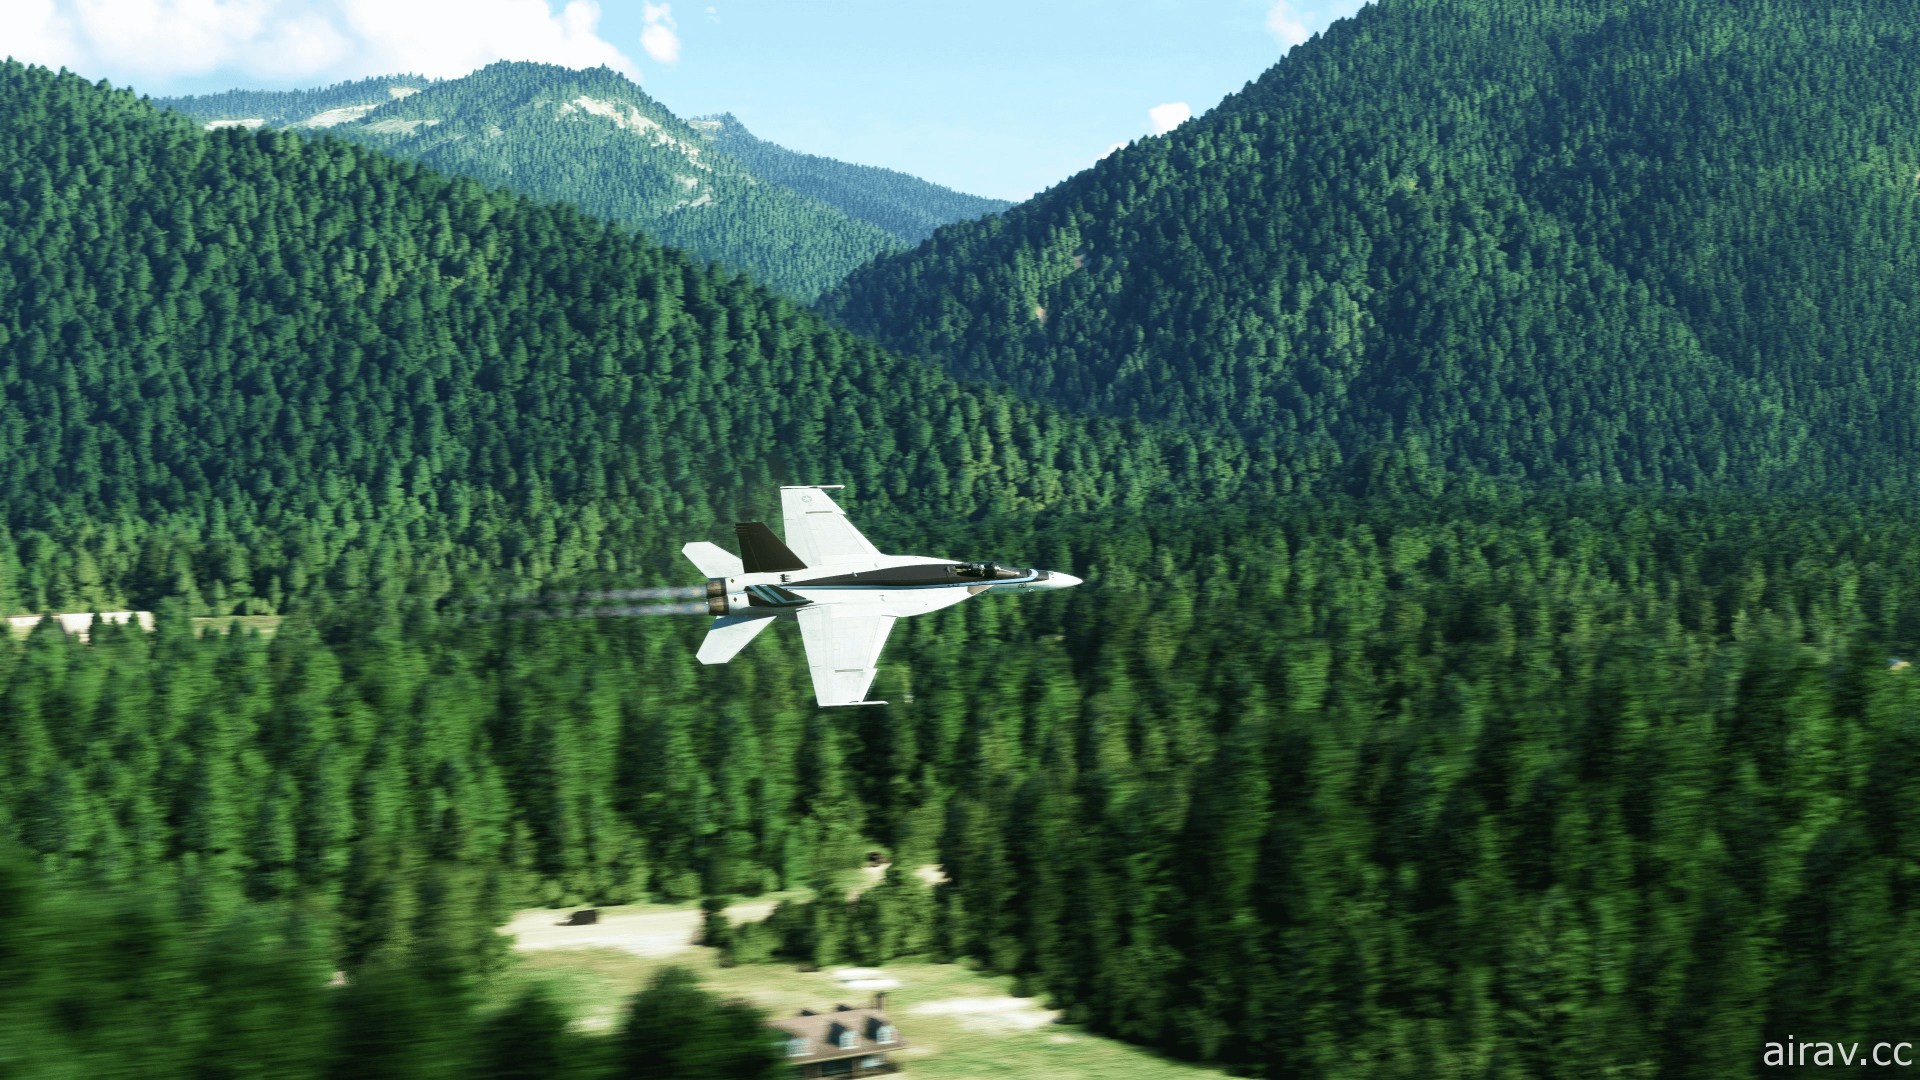 《微軟模擬飛行》全新《捍衛戰士：獨行俠》DLC 正式登場 本週日舉辦大銀幕飛行體驗場